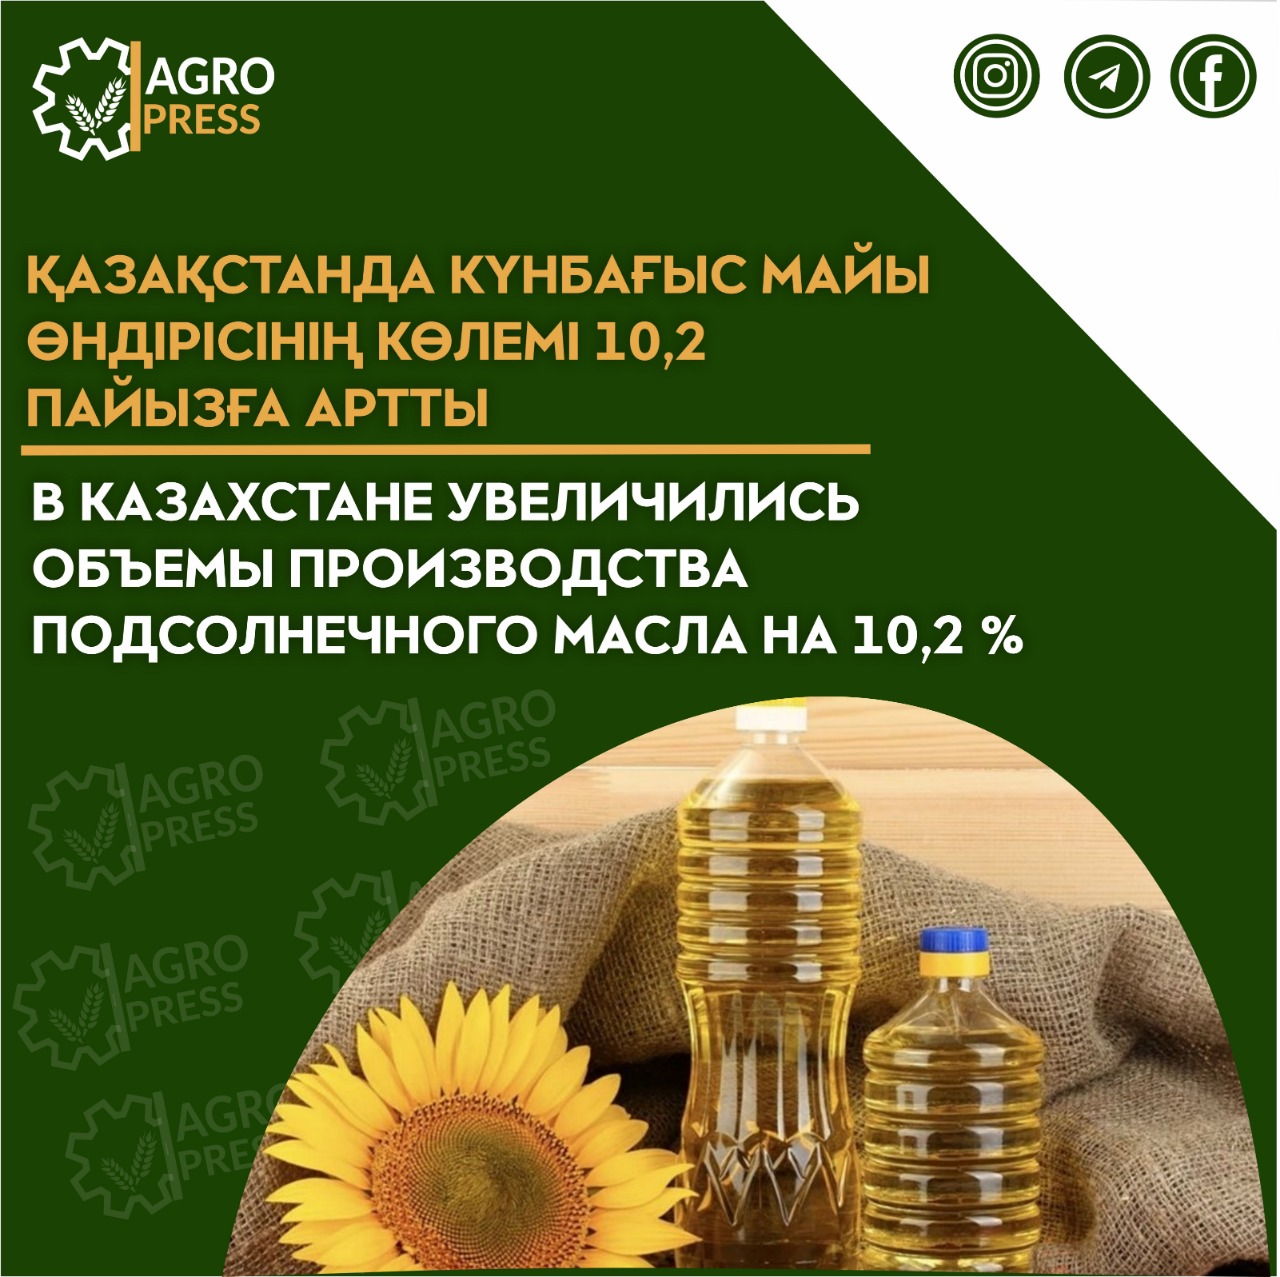 В Казахстане увеличились объемы производства подсолнечного масла на 10,2 %